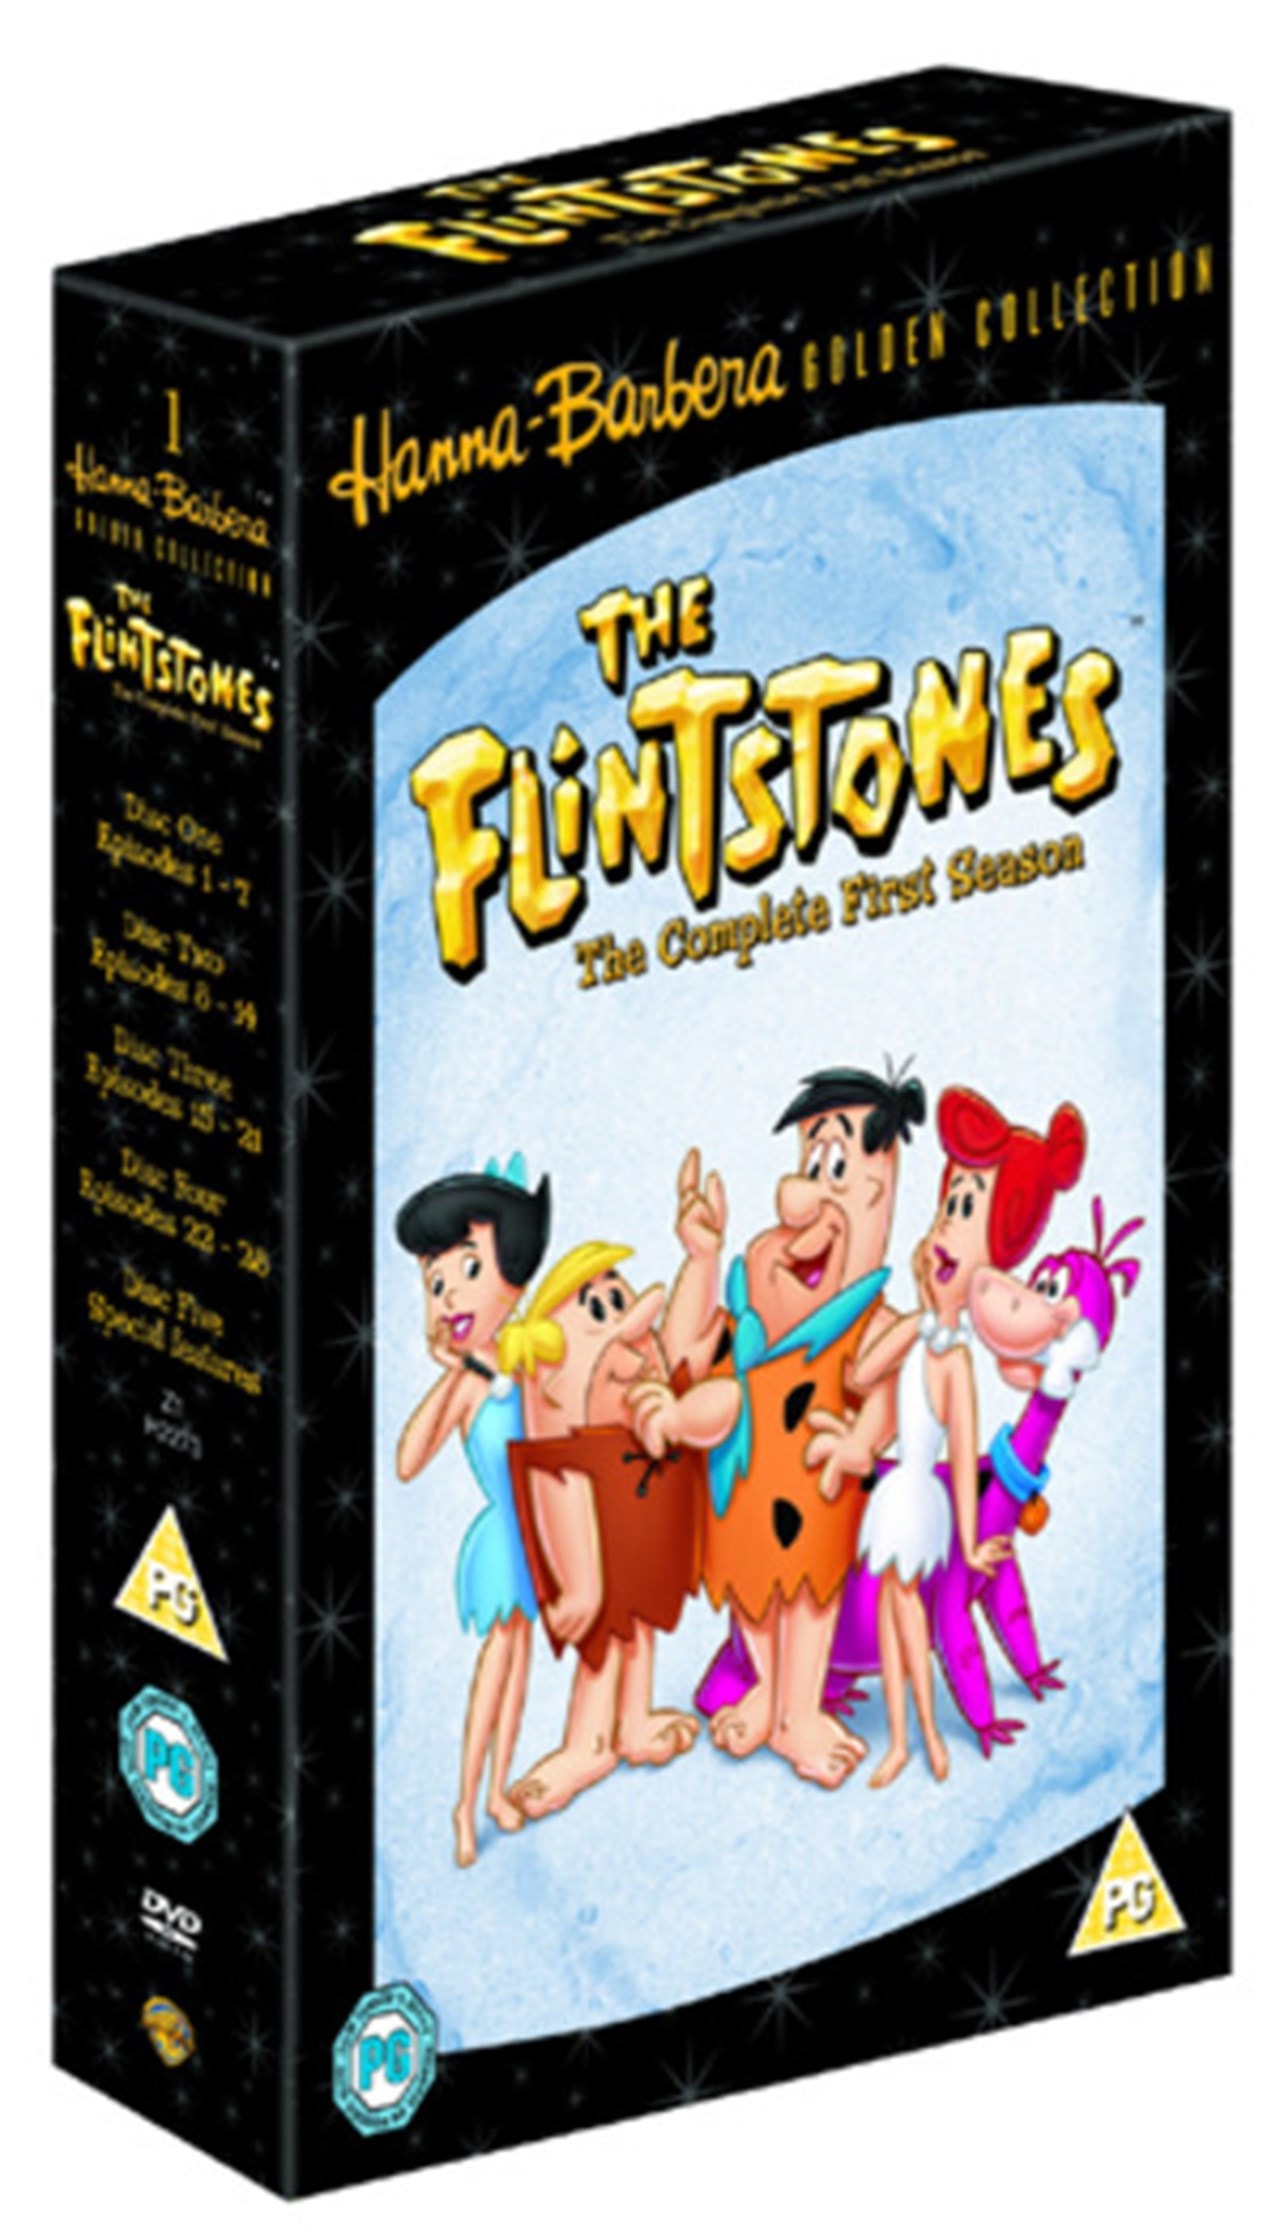 flintstones dvd